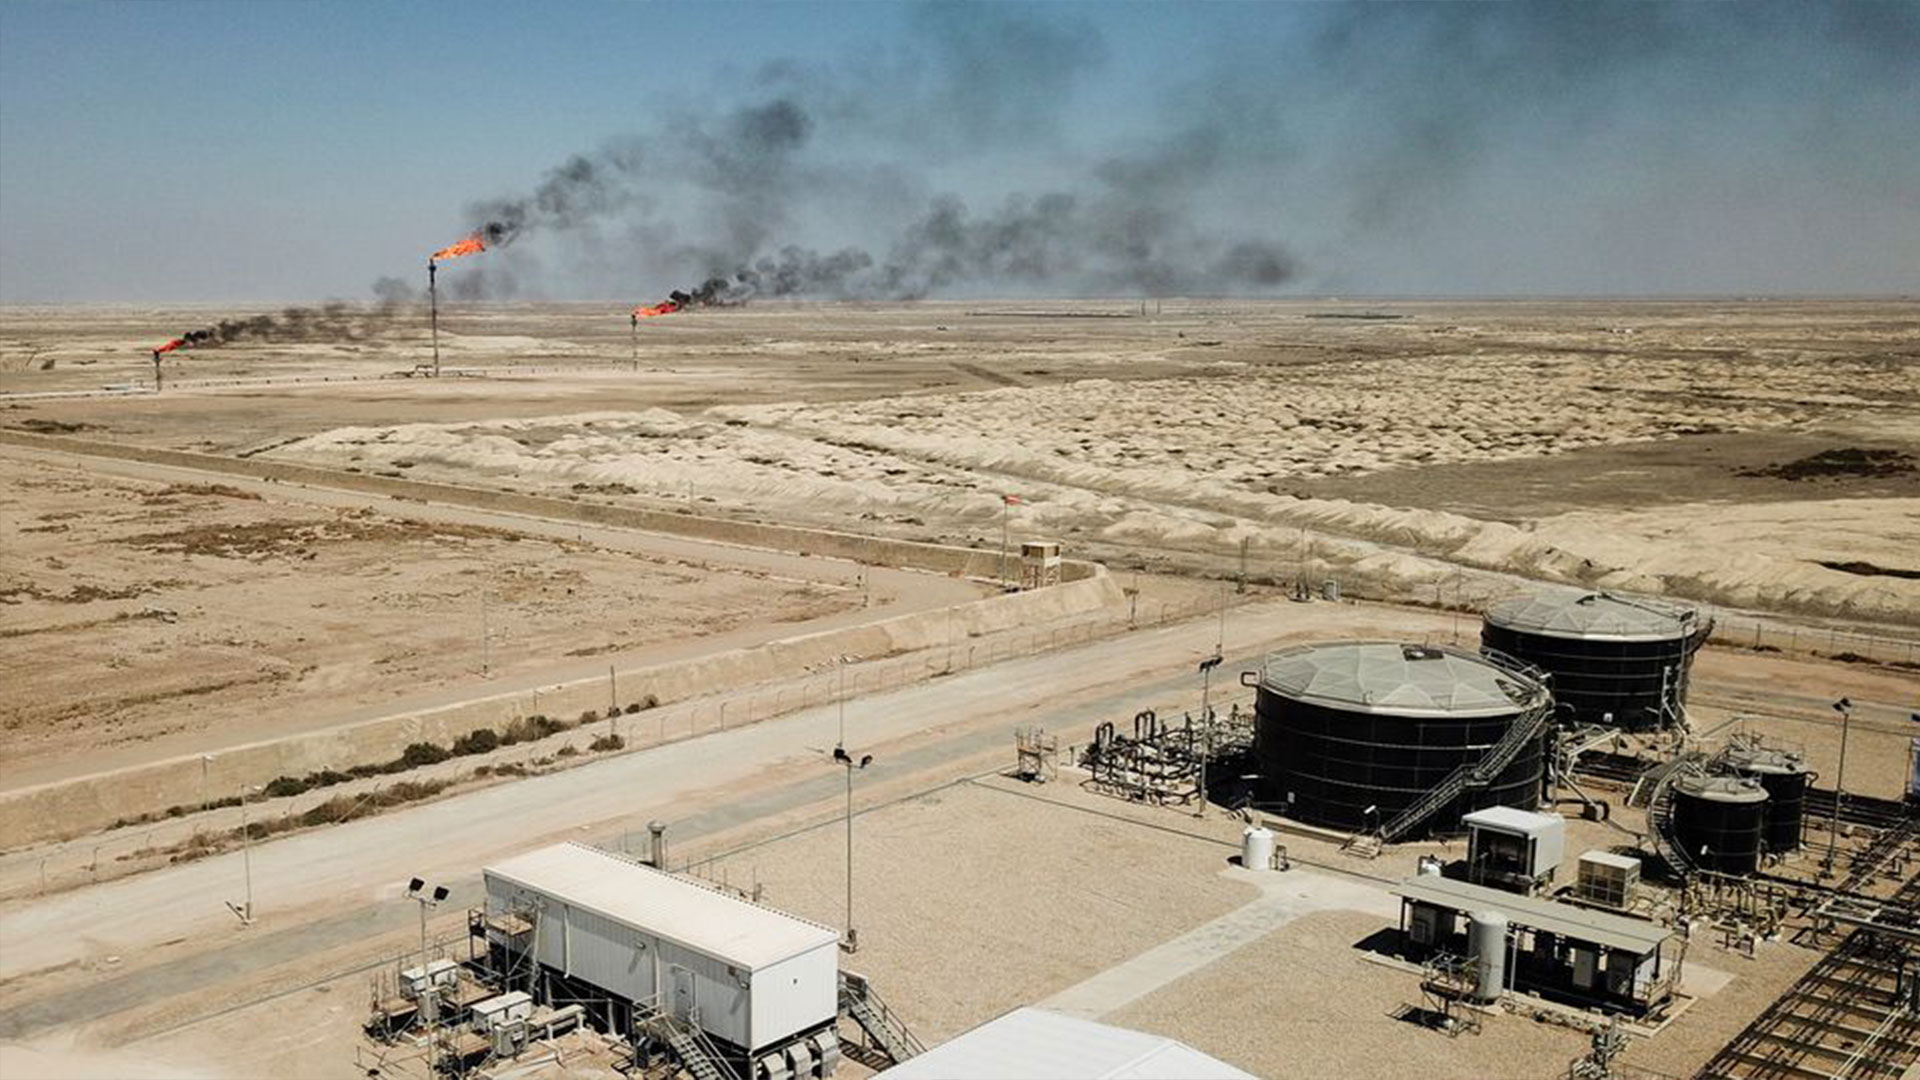  A view shows Iraq's Majnoon oil field near Basra, Iraq, March 27, 2022.Picture taken with a drone. REUTERS/Essam Al-Sudani